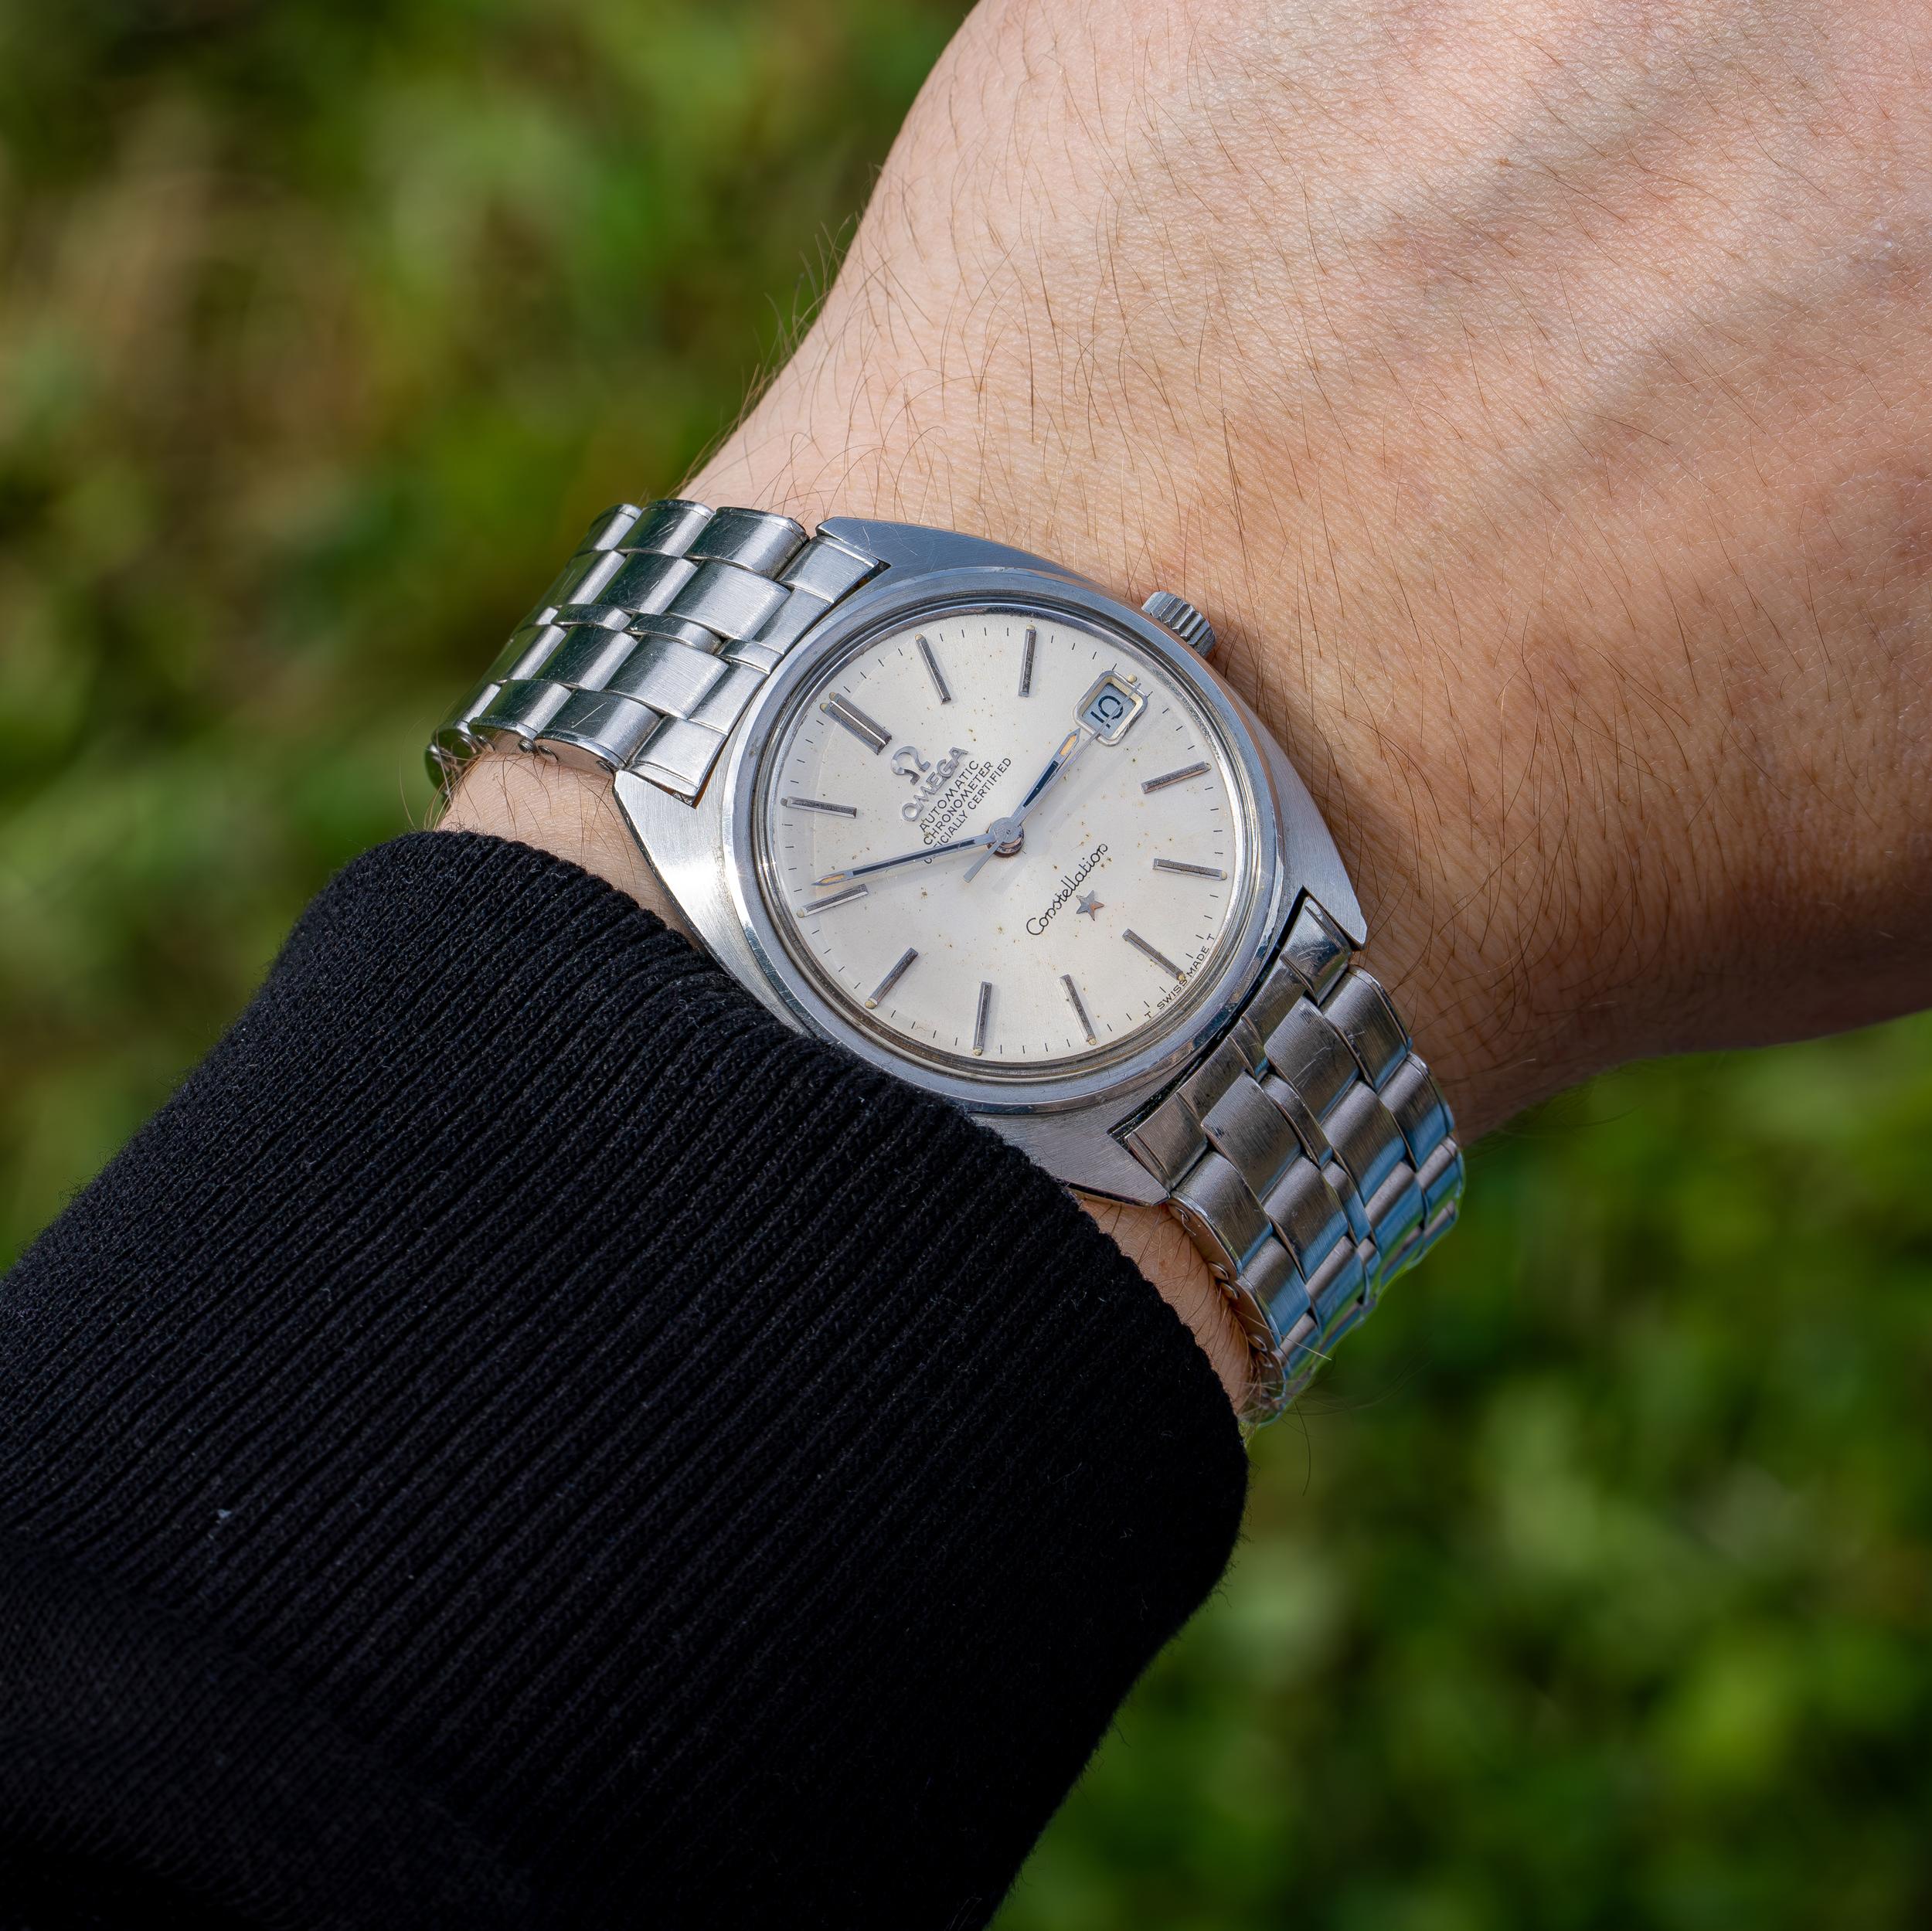 Omega Constellation Automatic Vintage Edelstahl Uhr.

Hergestellt in der Schweiz, CIRCA 1960er Jahre
Gehäuse-Durchmesser: 35 mm
Uhrwerk: Mechanische Automatik
MATERIAL des Gehäuses: Rostfreier Stahl
MATERIAL des Uhrenarmbands: Rostfreier